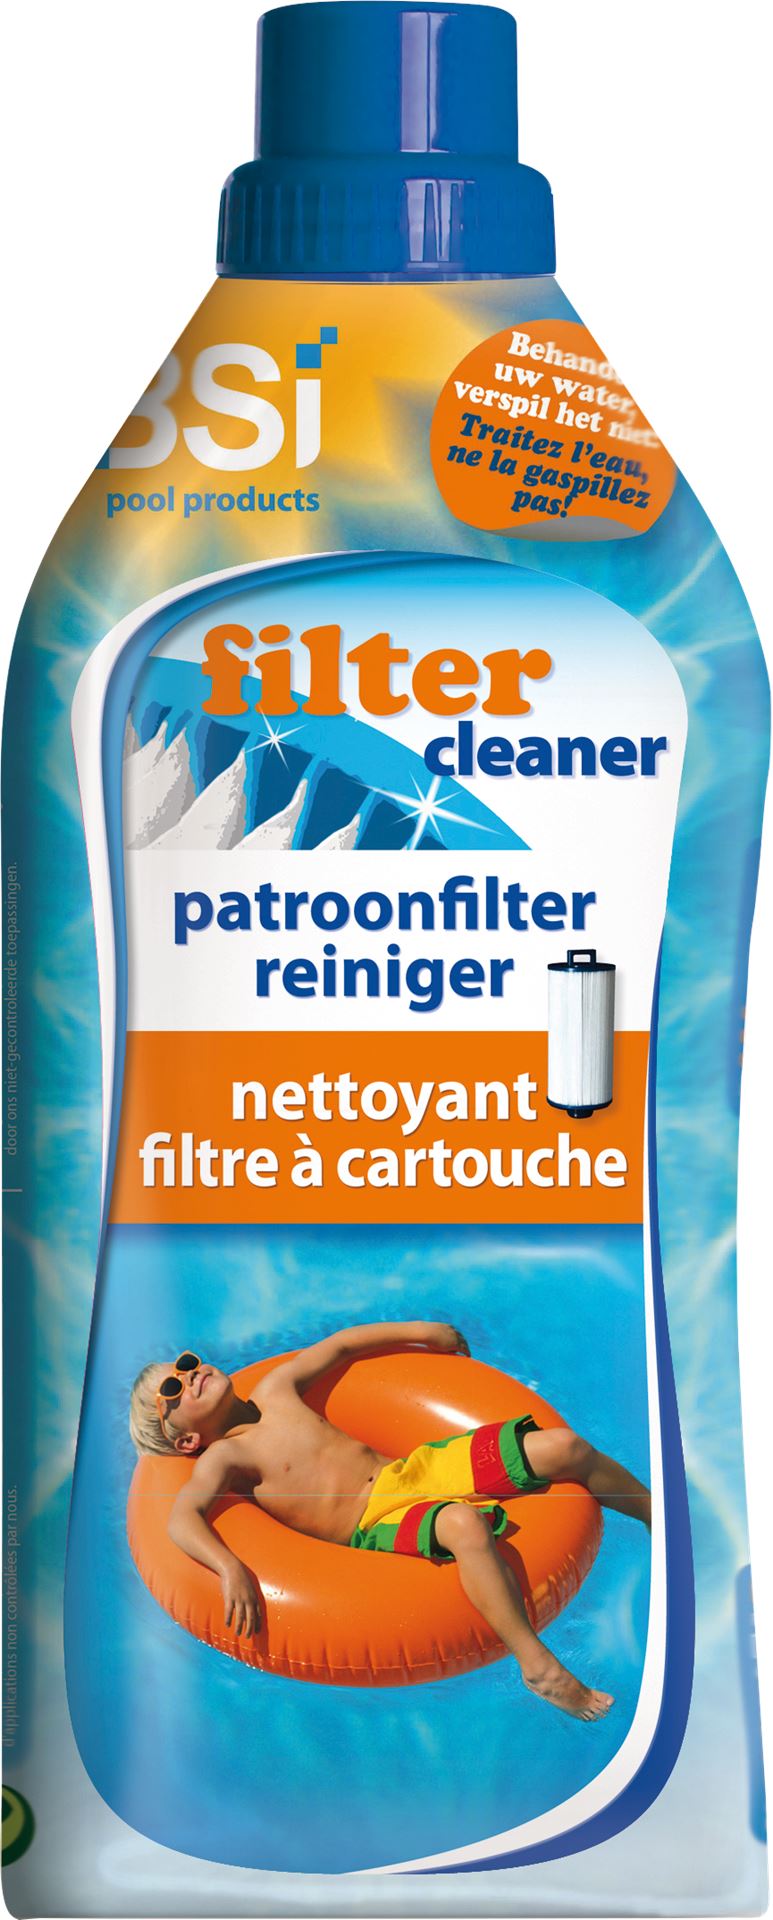 Filter-cleaner-1-L